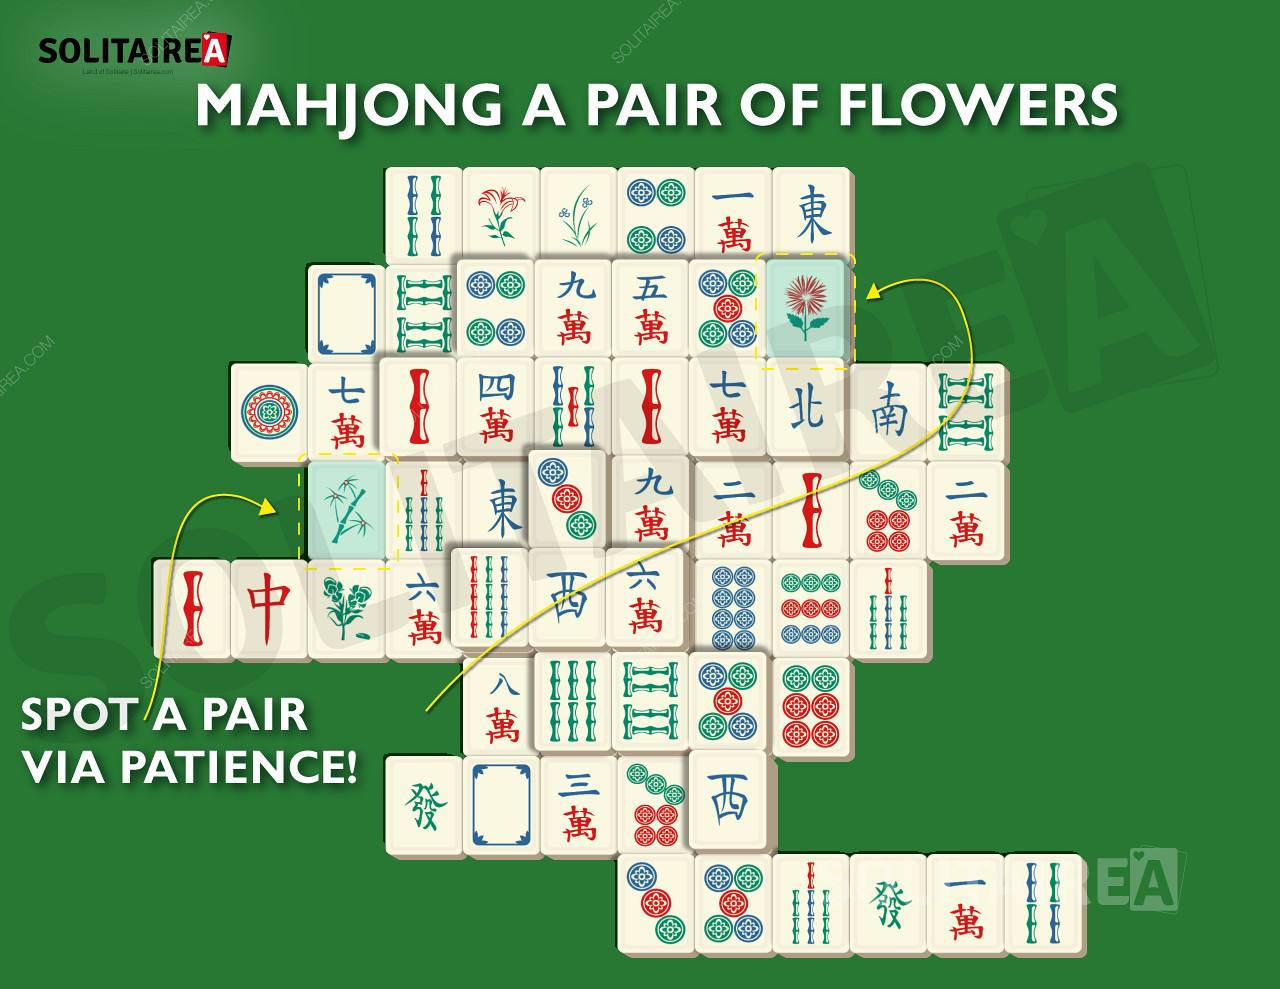 Изображение на Mahjong Solitaire, показващо типичен избор от плочки.